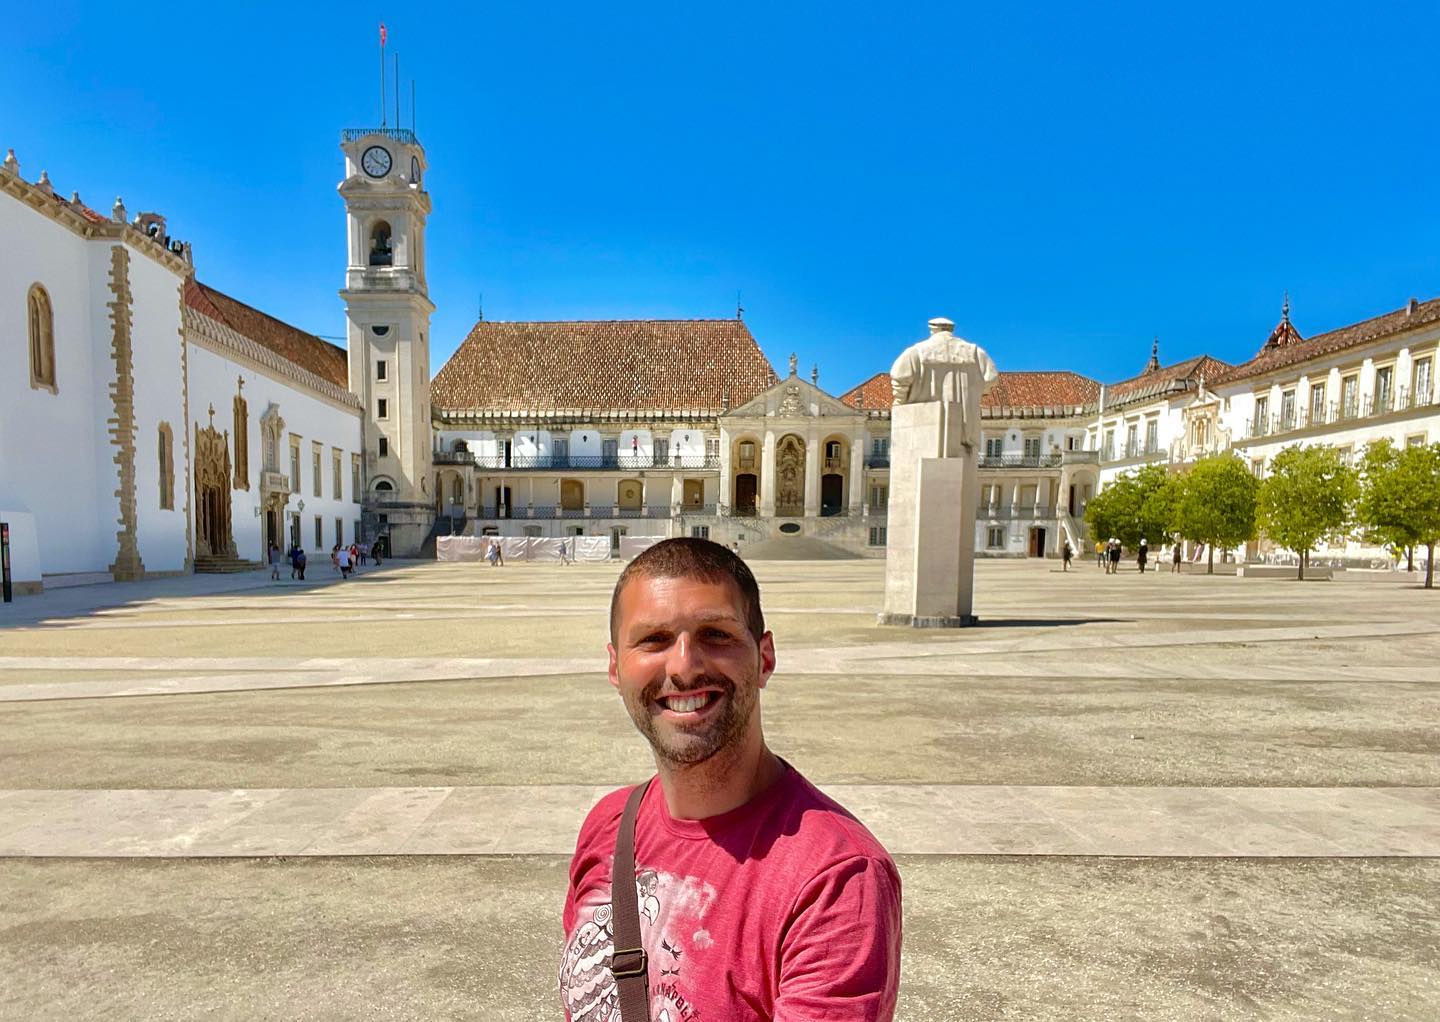 Avrupa’nın en eski üniversitesilerinden Coimbra Üniversitesi. .
. .
#coimbra #portugal #nasilgezdim #coimbrauniversity 🇵🇹 #benimobjektifim #milliyetrota #gezimanya #hurriyetseyahat #portekiz #iphoneonly #seyahatekspresi #seyahat  #geziyorum #bevisuallyinspired #gezginfest #gezginfoto #passionpassport #iphonography #ilovetravelling #wonderful_places #nereyegitsek #keşfet #gezenlerden #seyahataşkı #discoverearth #gezelimgörelim #gezginstagram #wordcaptures #seetheworld #mytravelgram